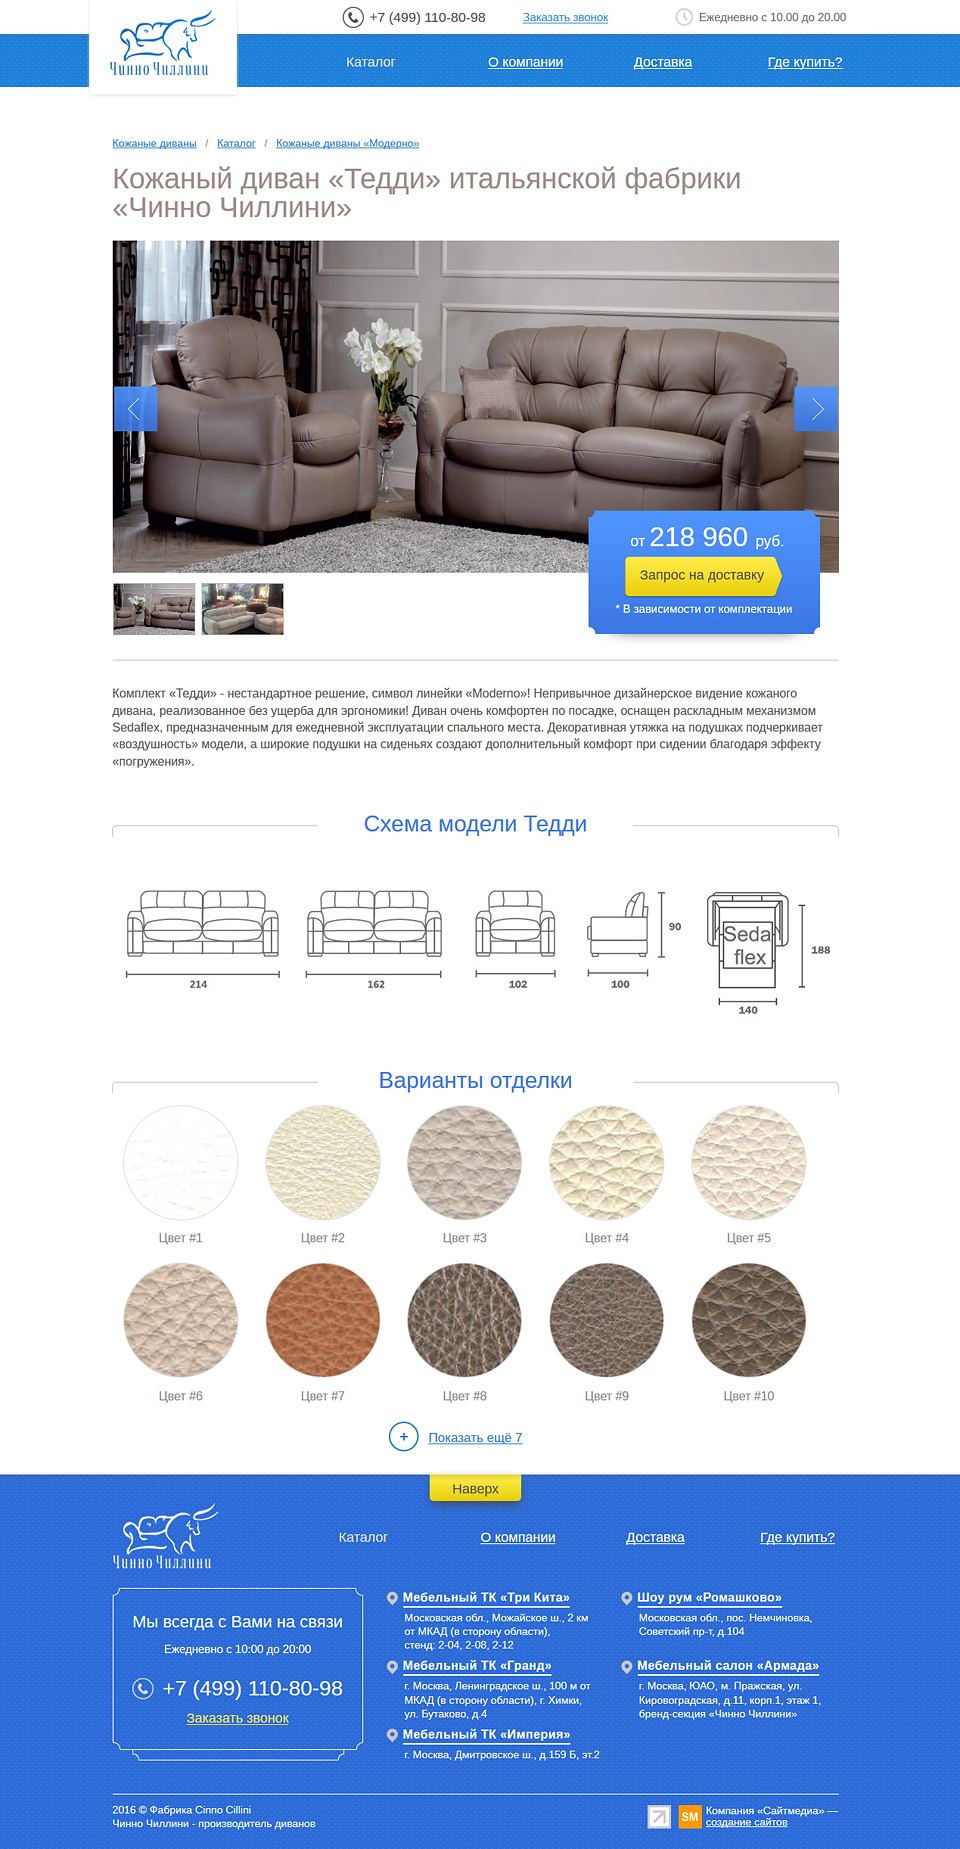 Второстепенная страница сайта (описание модели дивана)